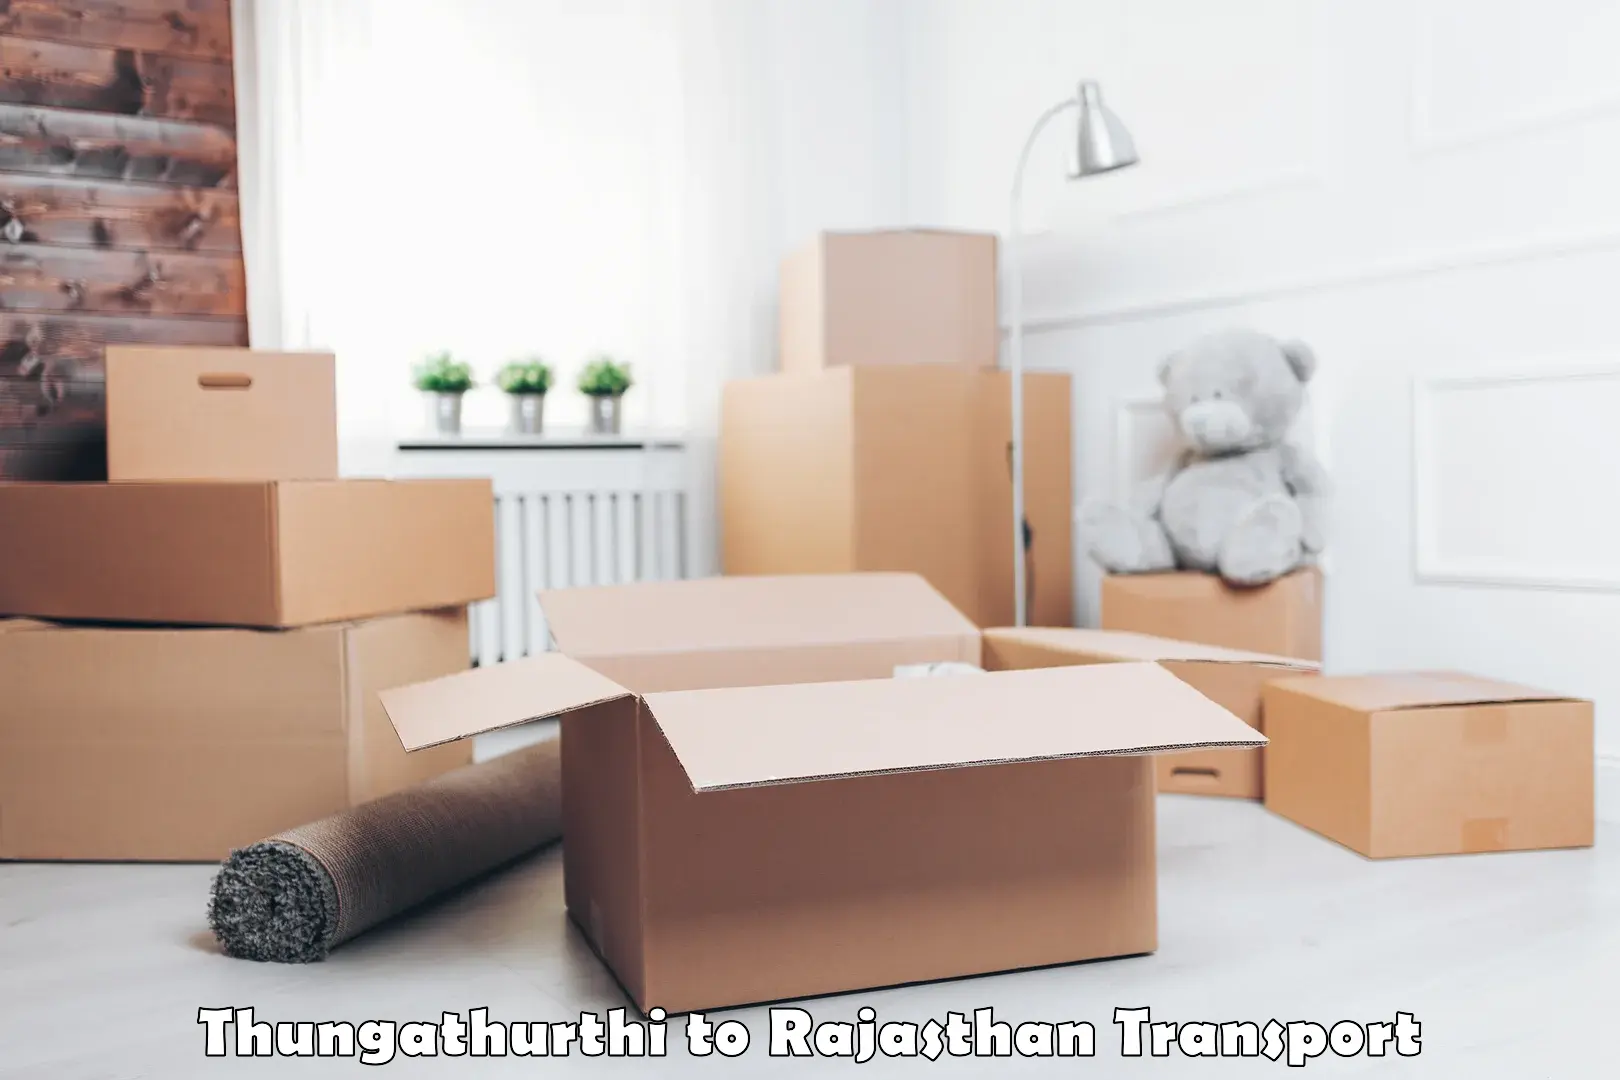 Shipping partner Thungathurthi to Rajasthan